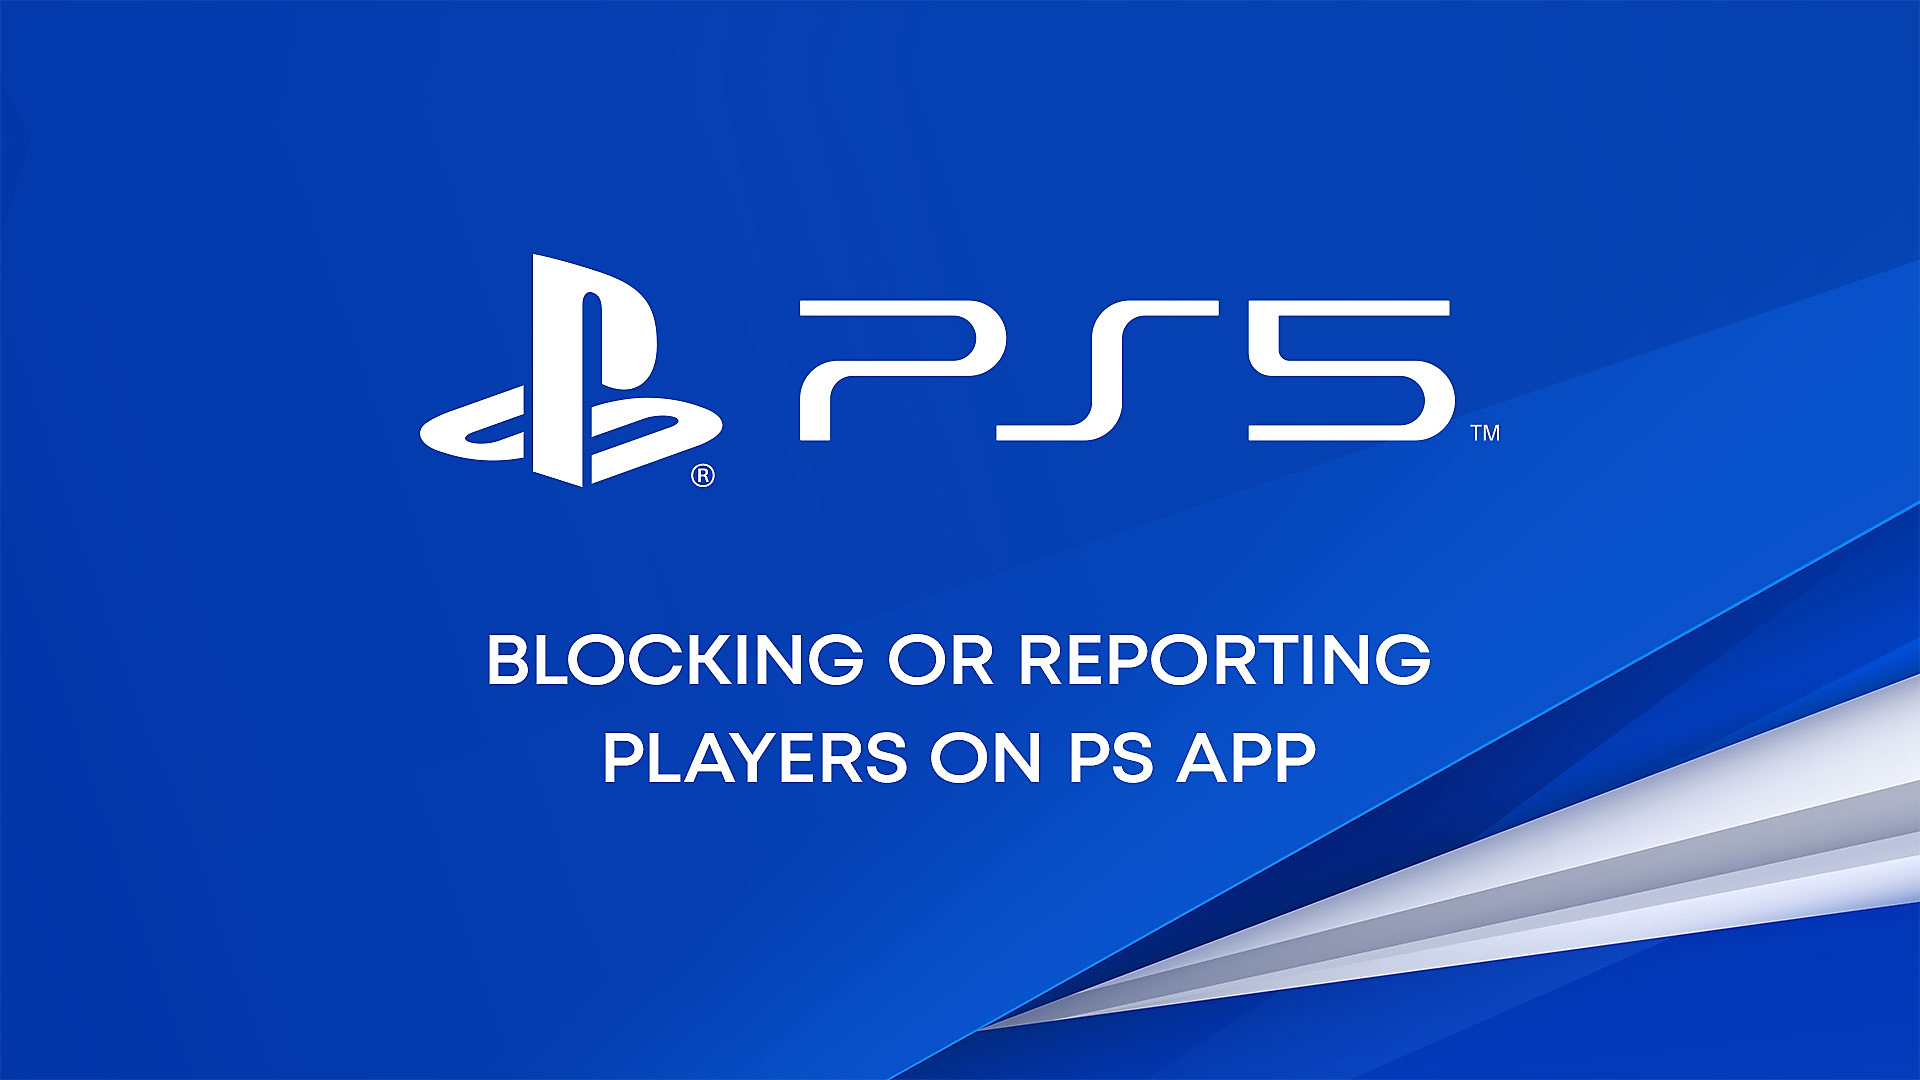 Video de YouTube sobre cómo bloquear o denunciar jugadores en PS App.